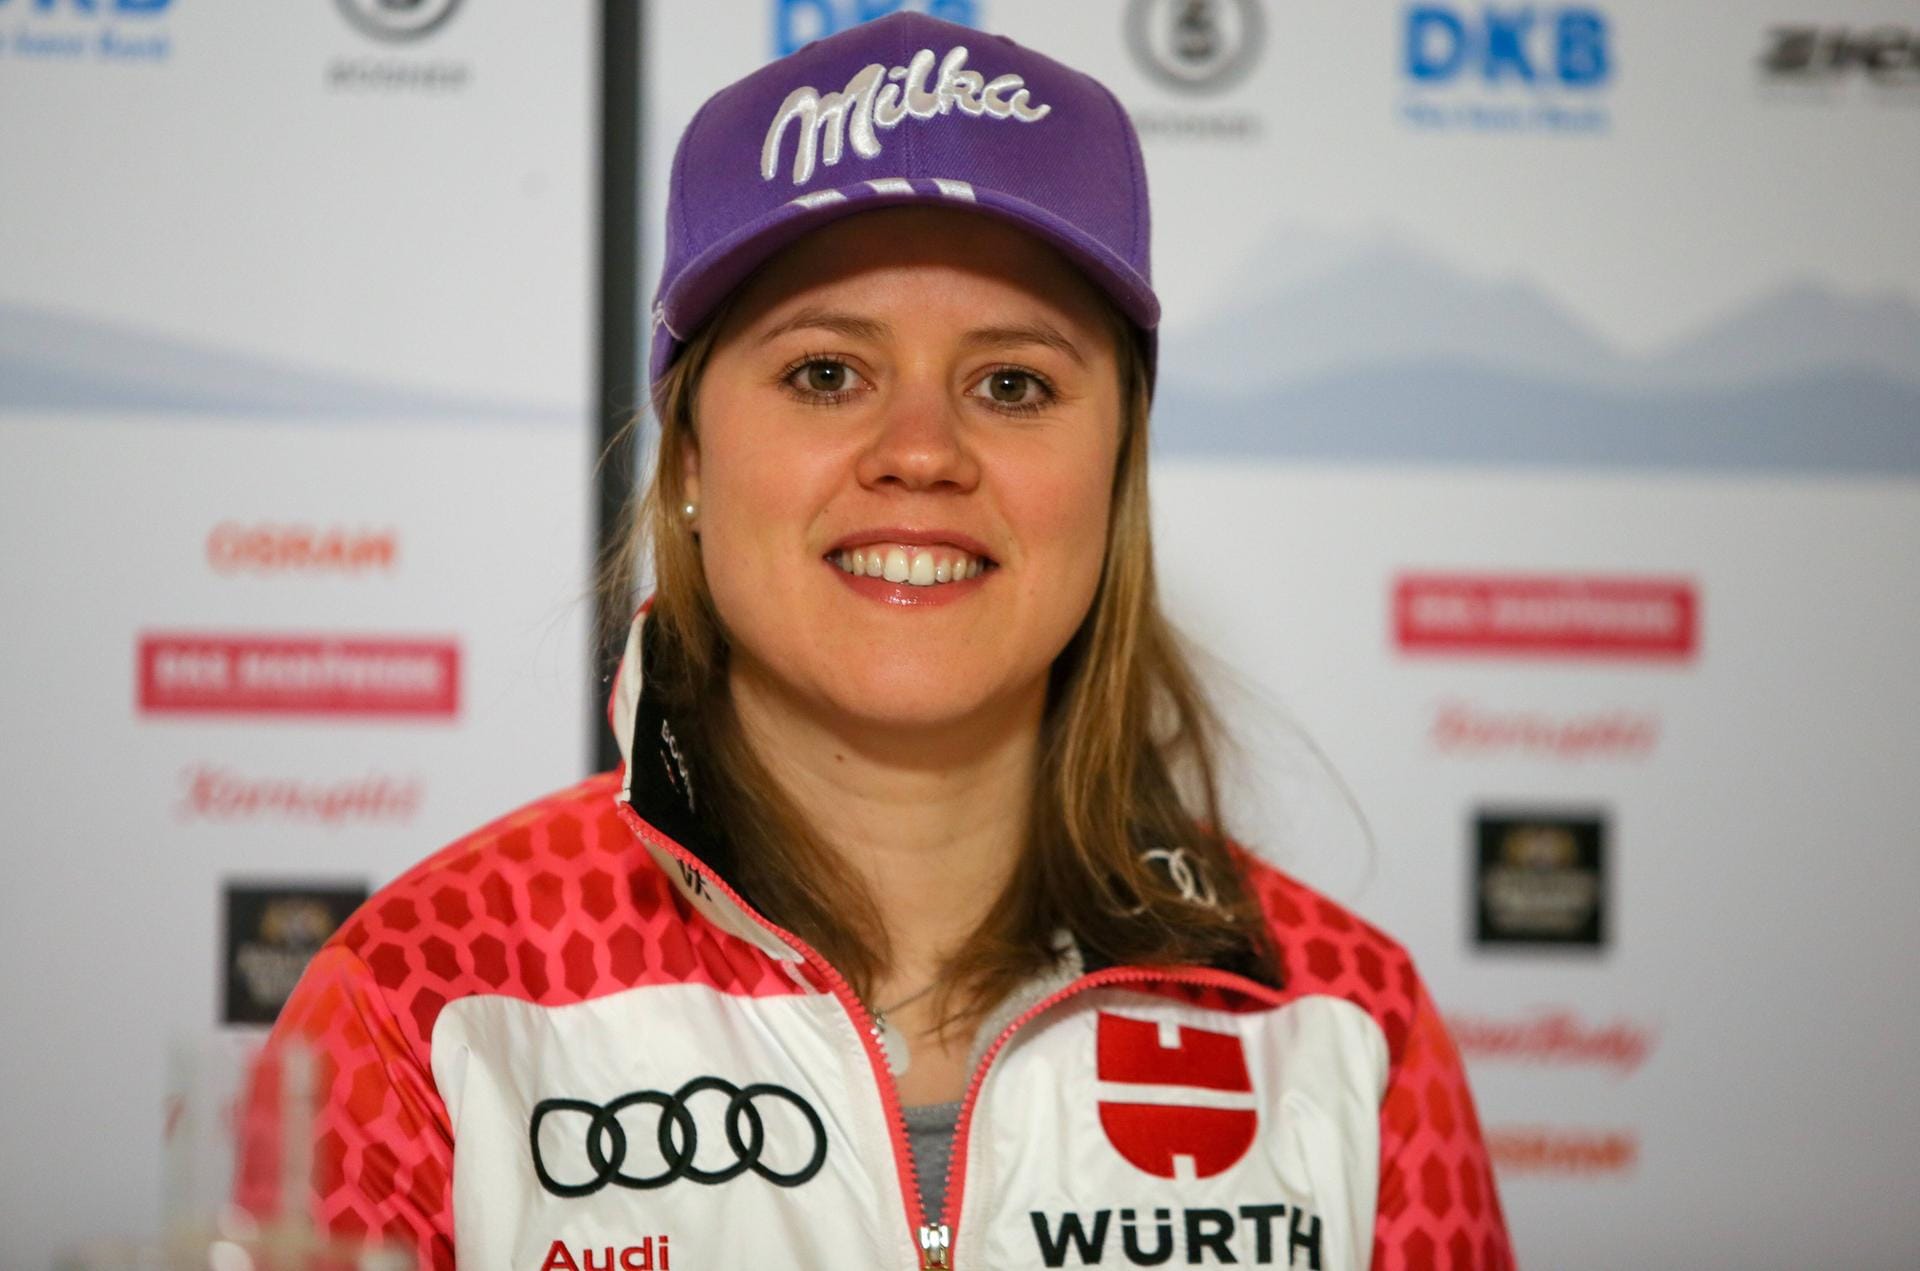 Viktoria Rebensburg war in der vergangenen Saison vom Pech verfolgt. Zahlreiche potenzielle Podestplätze verpasste die 28-Jährige nur um wenige hundertstel Sekunden, auch bei der WM in St. Moritz blieb der Bayerin nur der undankbare vierte Platz im Super G. In dieser Saison will die beste deutsche Skifahrerin angreifen, nach eigenen Angaben lief der Trainings-Sommer vielversprechend. Rebensburg ist eine komplette Athletin und hat das Potenzial, unter die besten drei in der Gesamtwertung zu fahren.